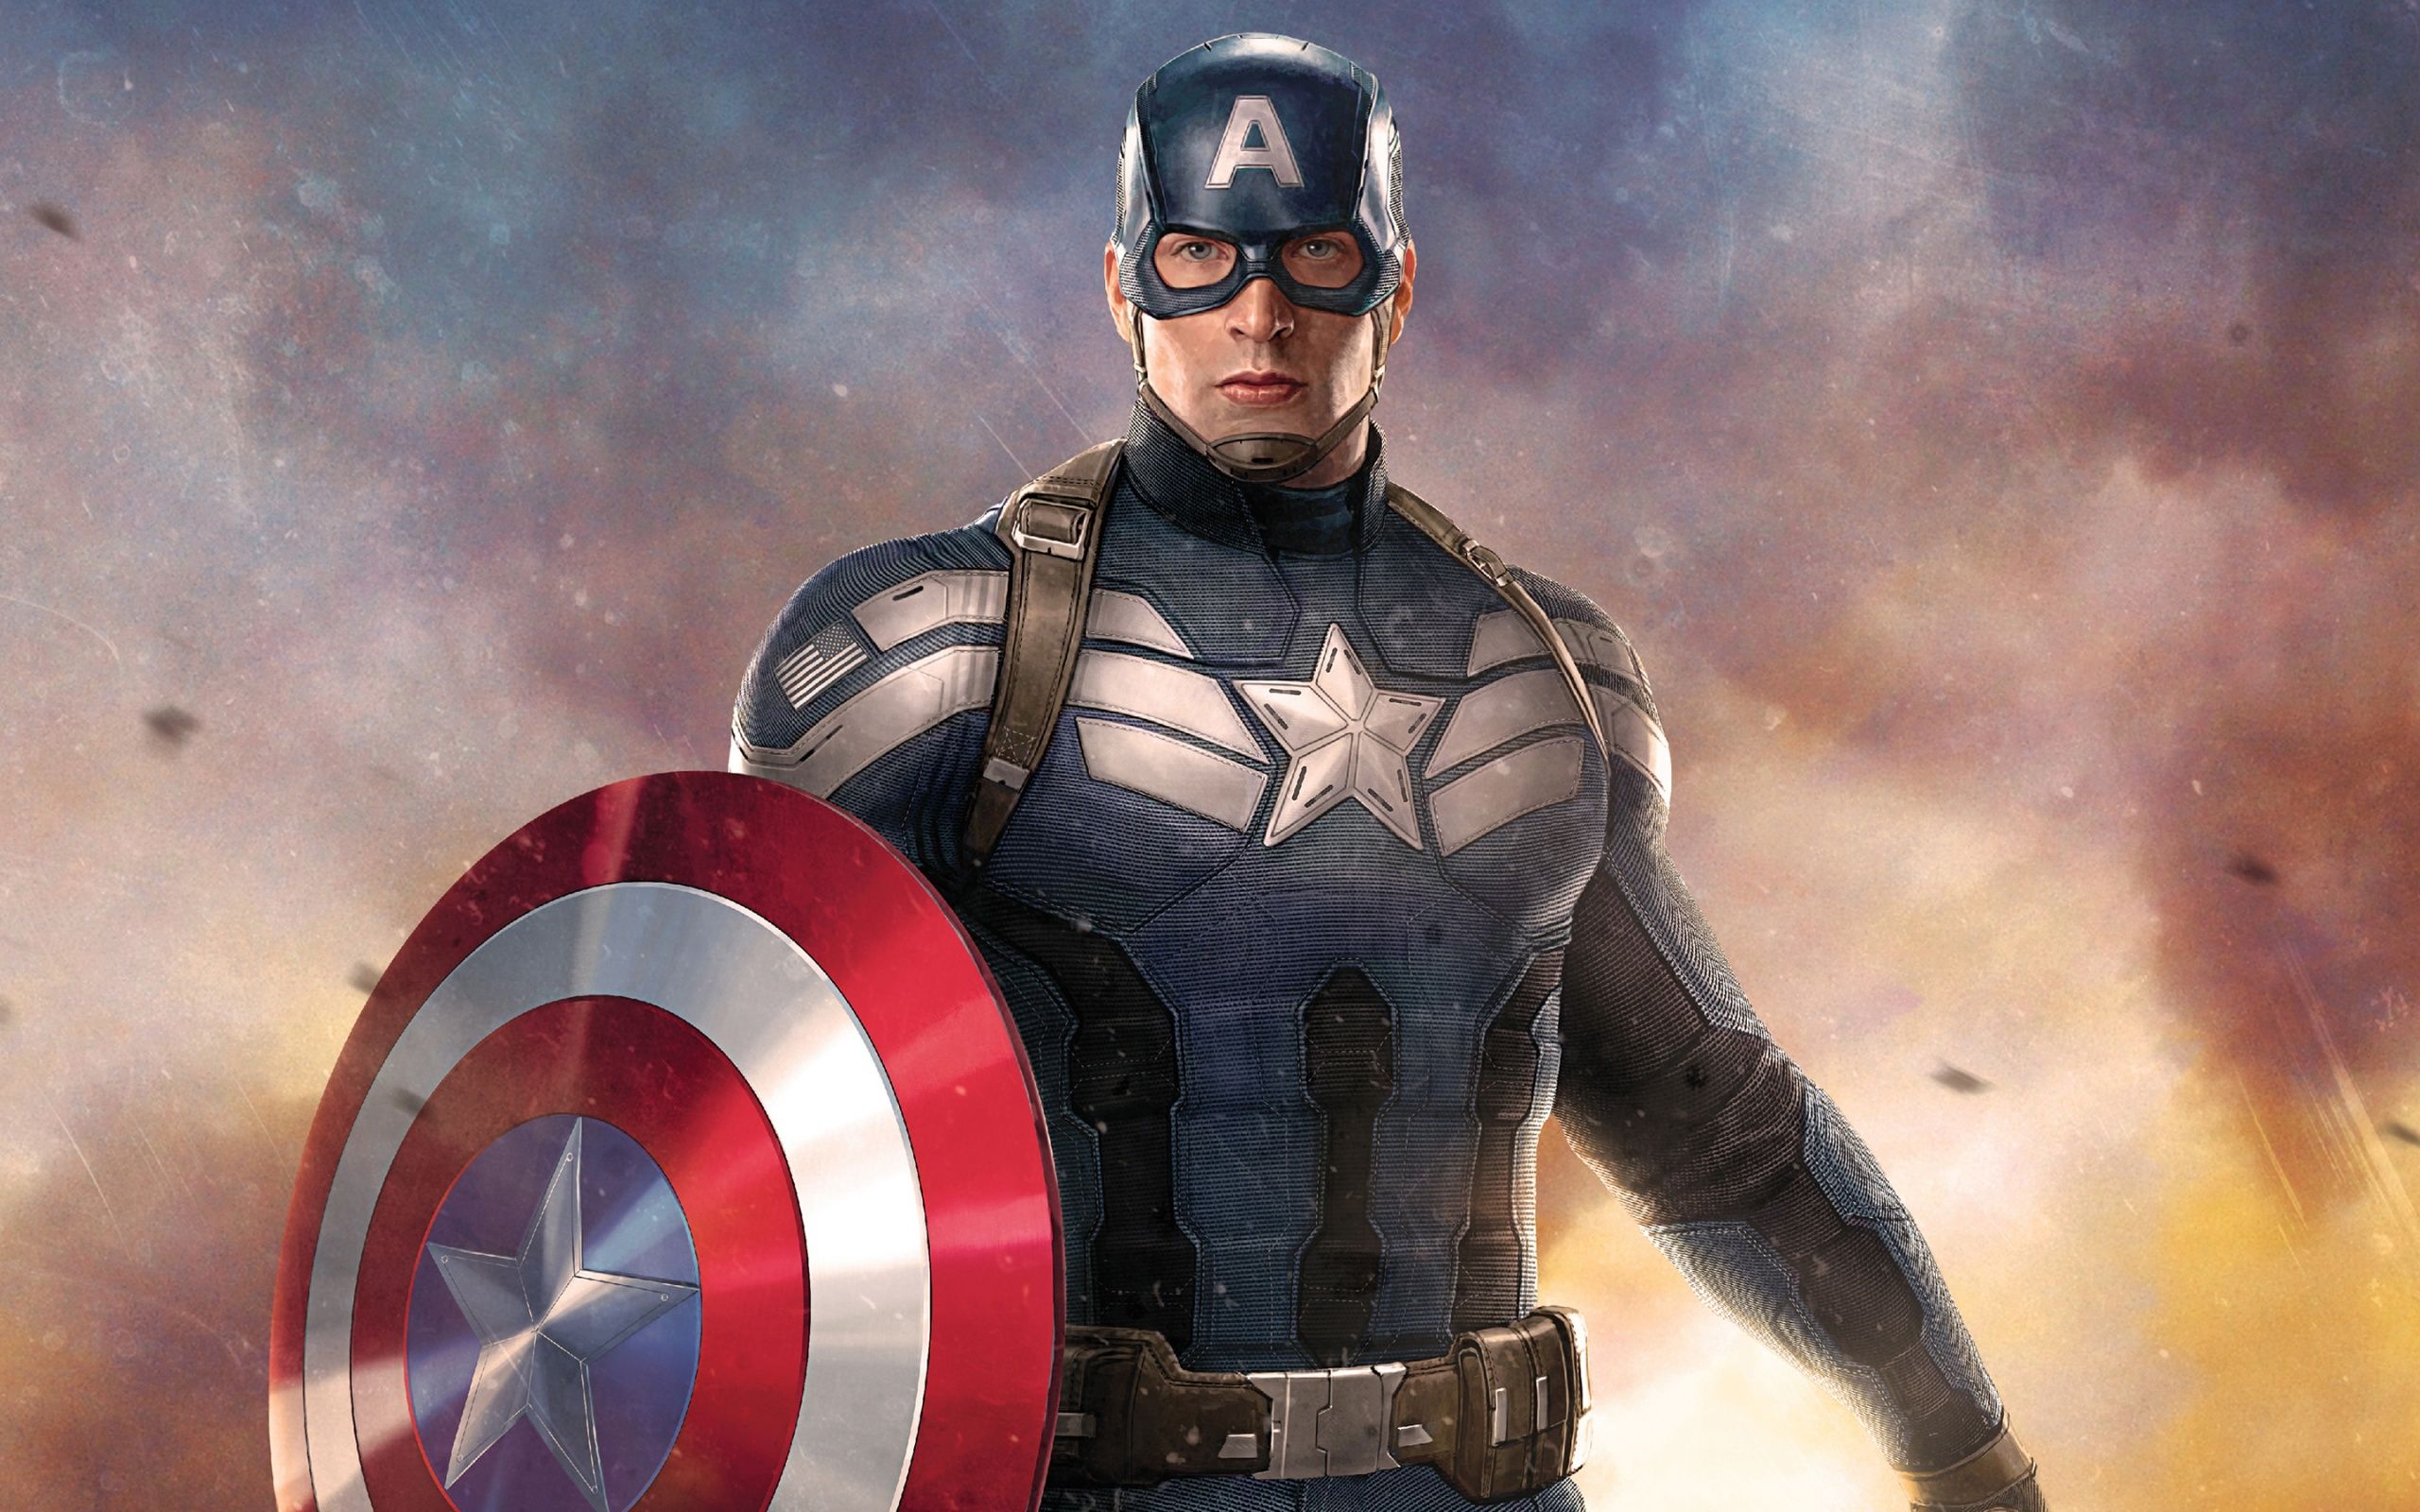 Captain America Artwork Wallpaper in jpg format for free download